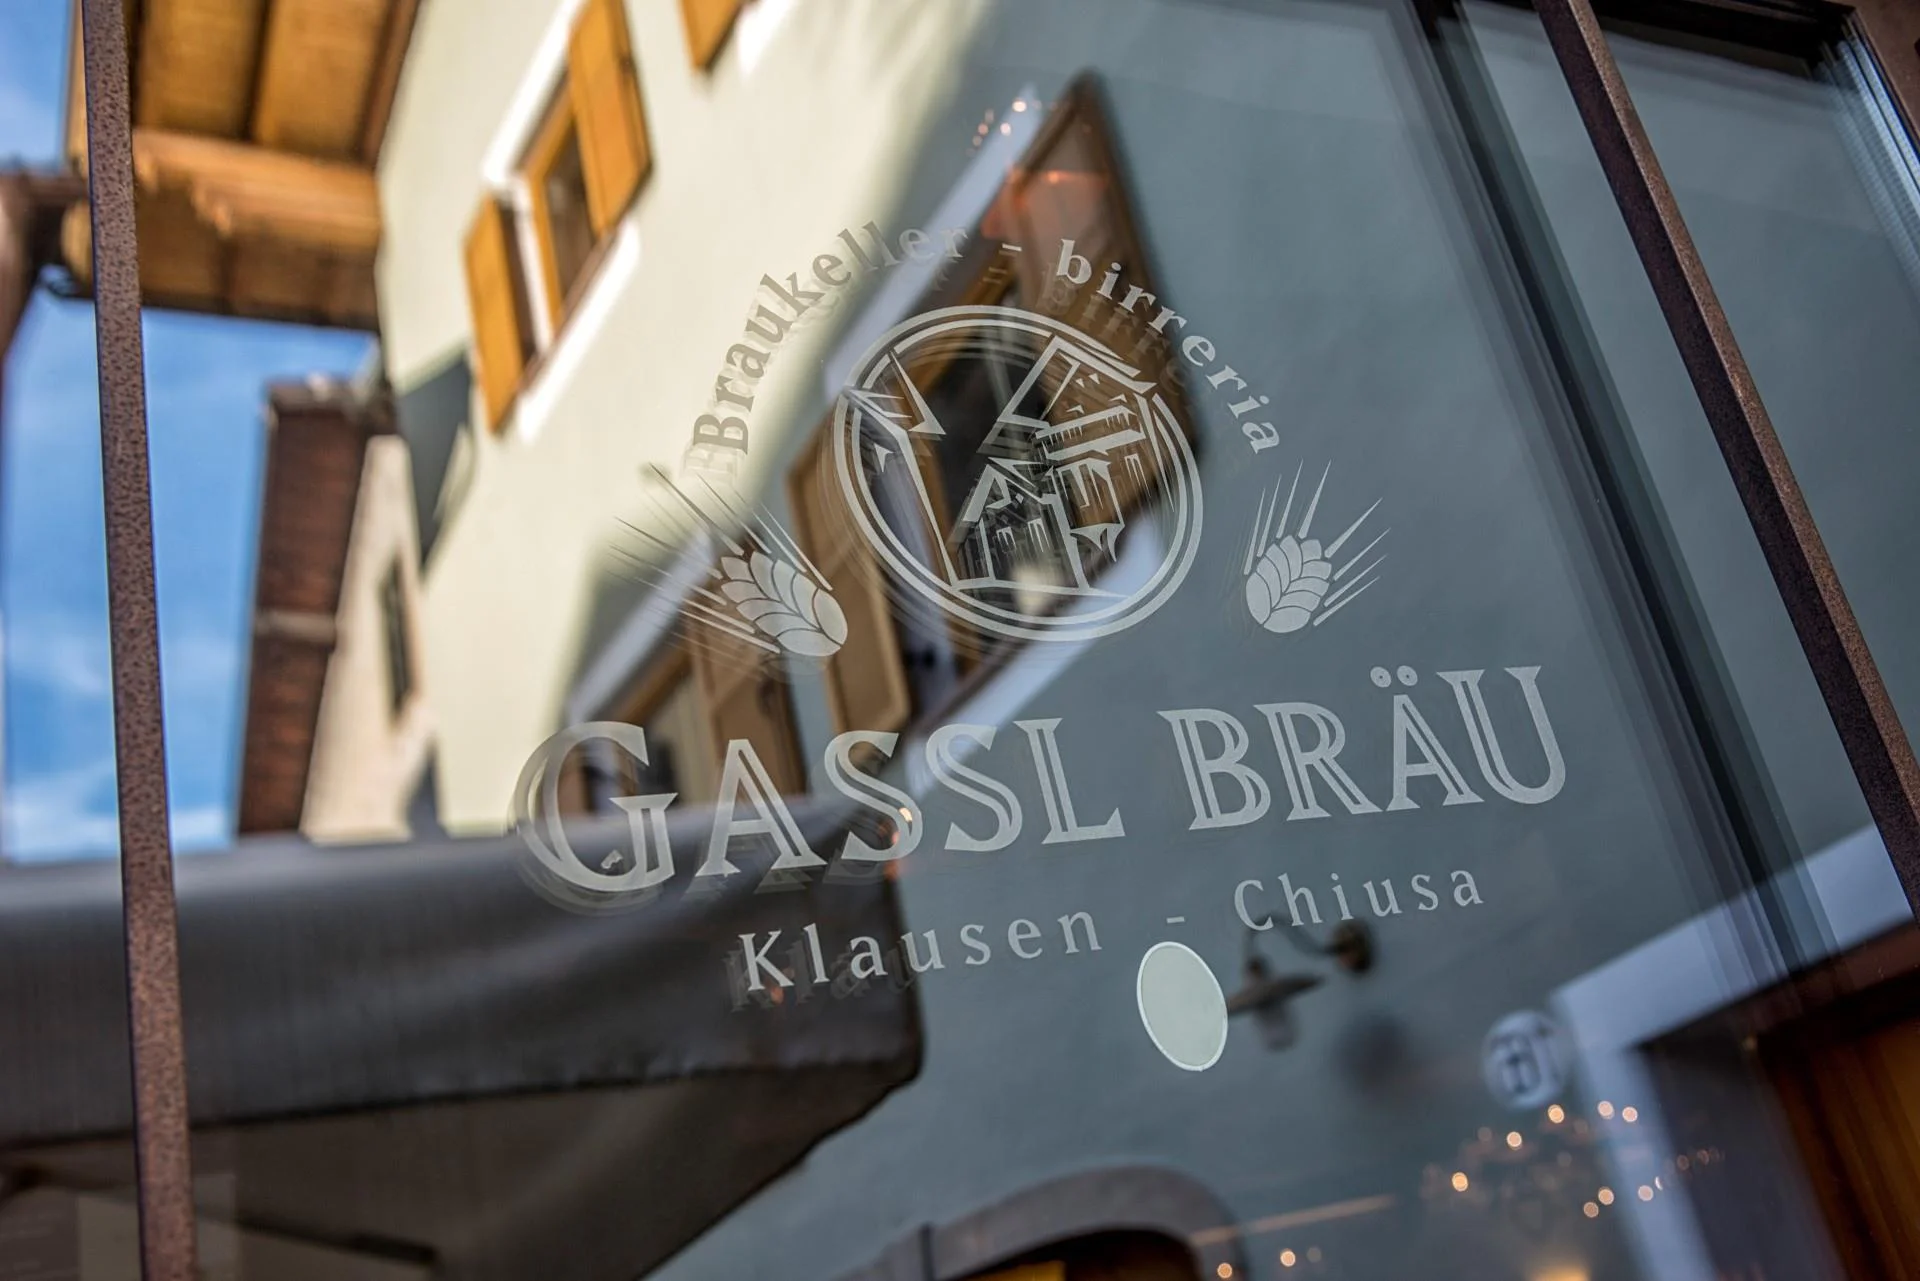 Gasthaus Brauerei Gasslbräu Klausen 4 suedtirol.info